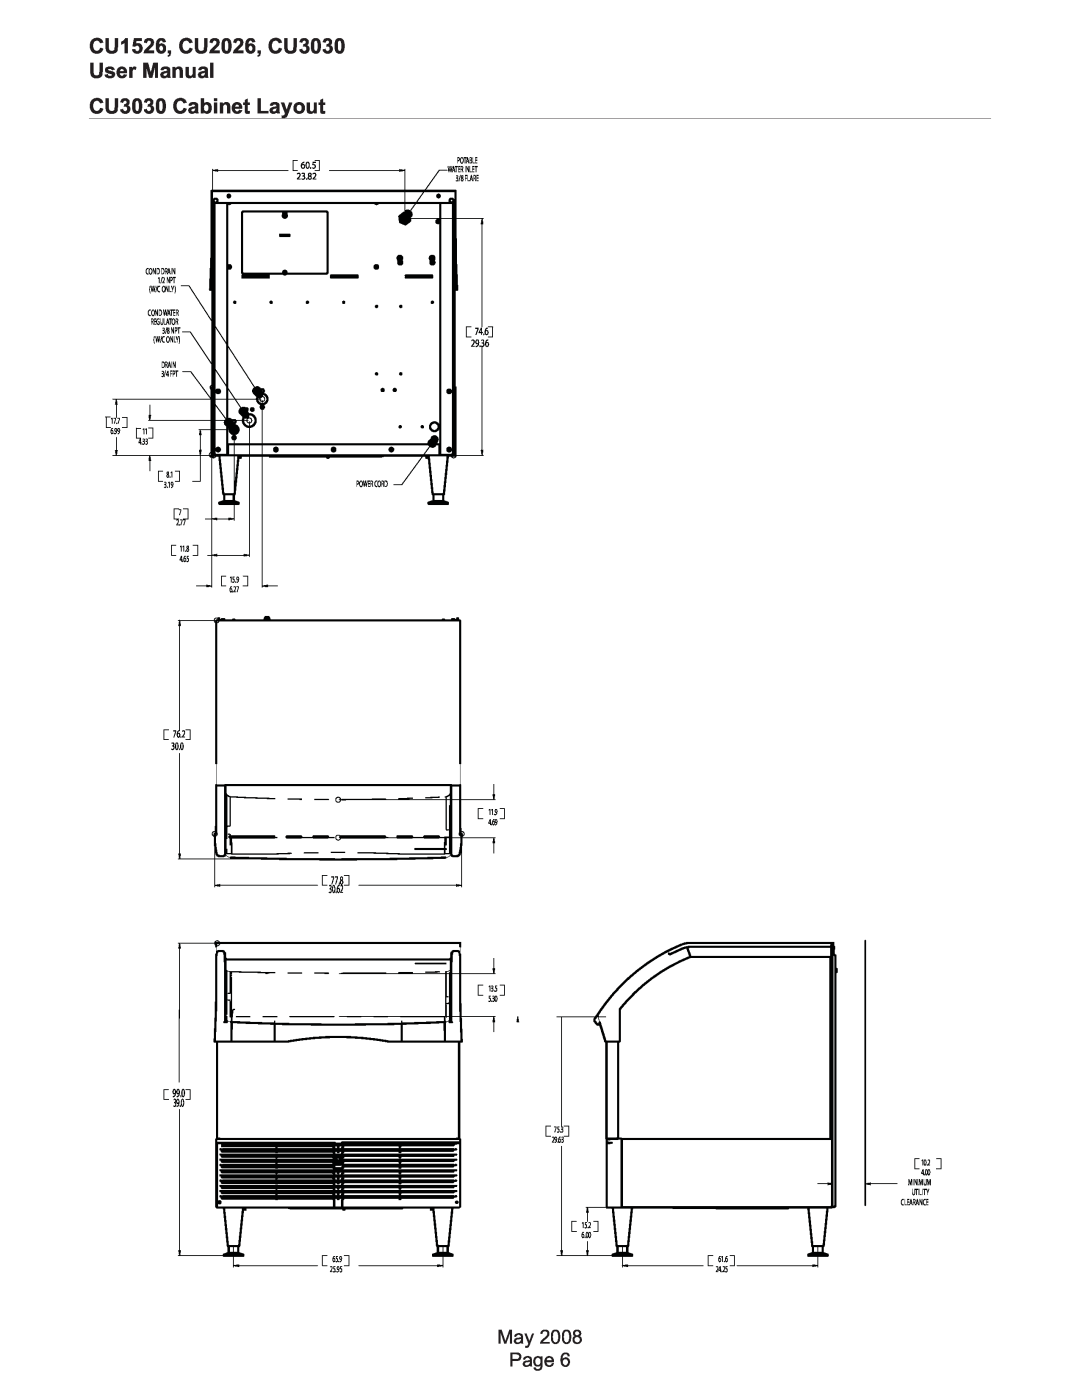 Scotsman Ice user manual CU1526, CU2026, CU3030 User Manual CU3030 Cabinet Layout, 99.0, 60.5, 23.82, 74.6, 29.36, 76.2 